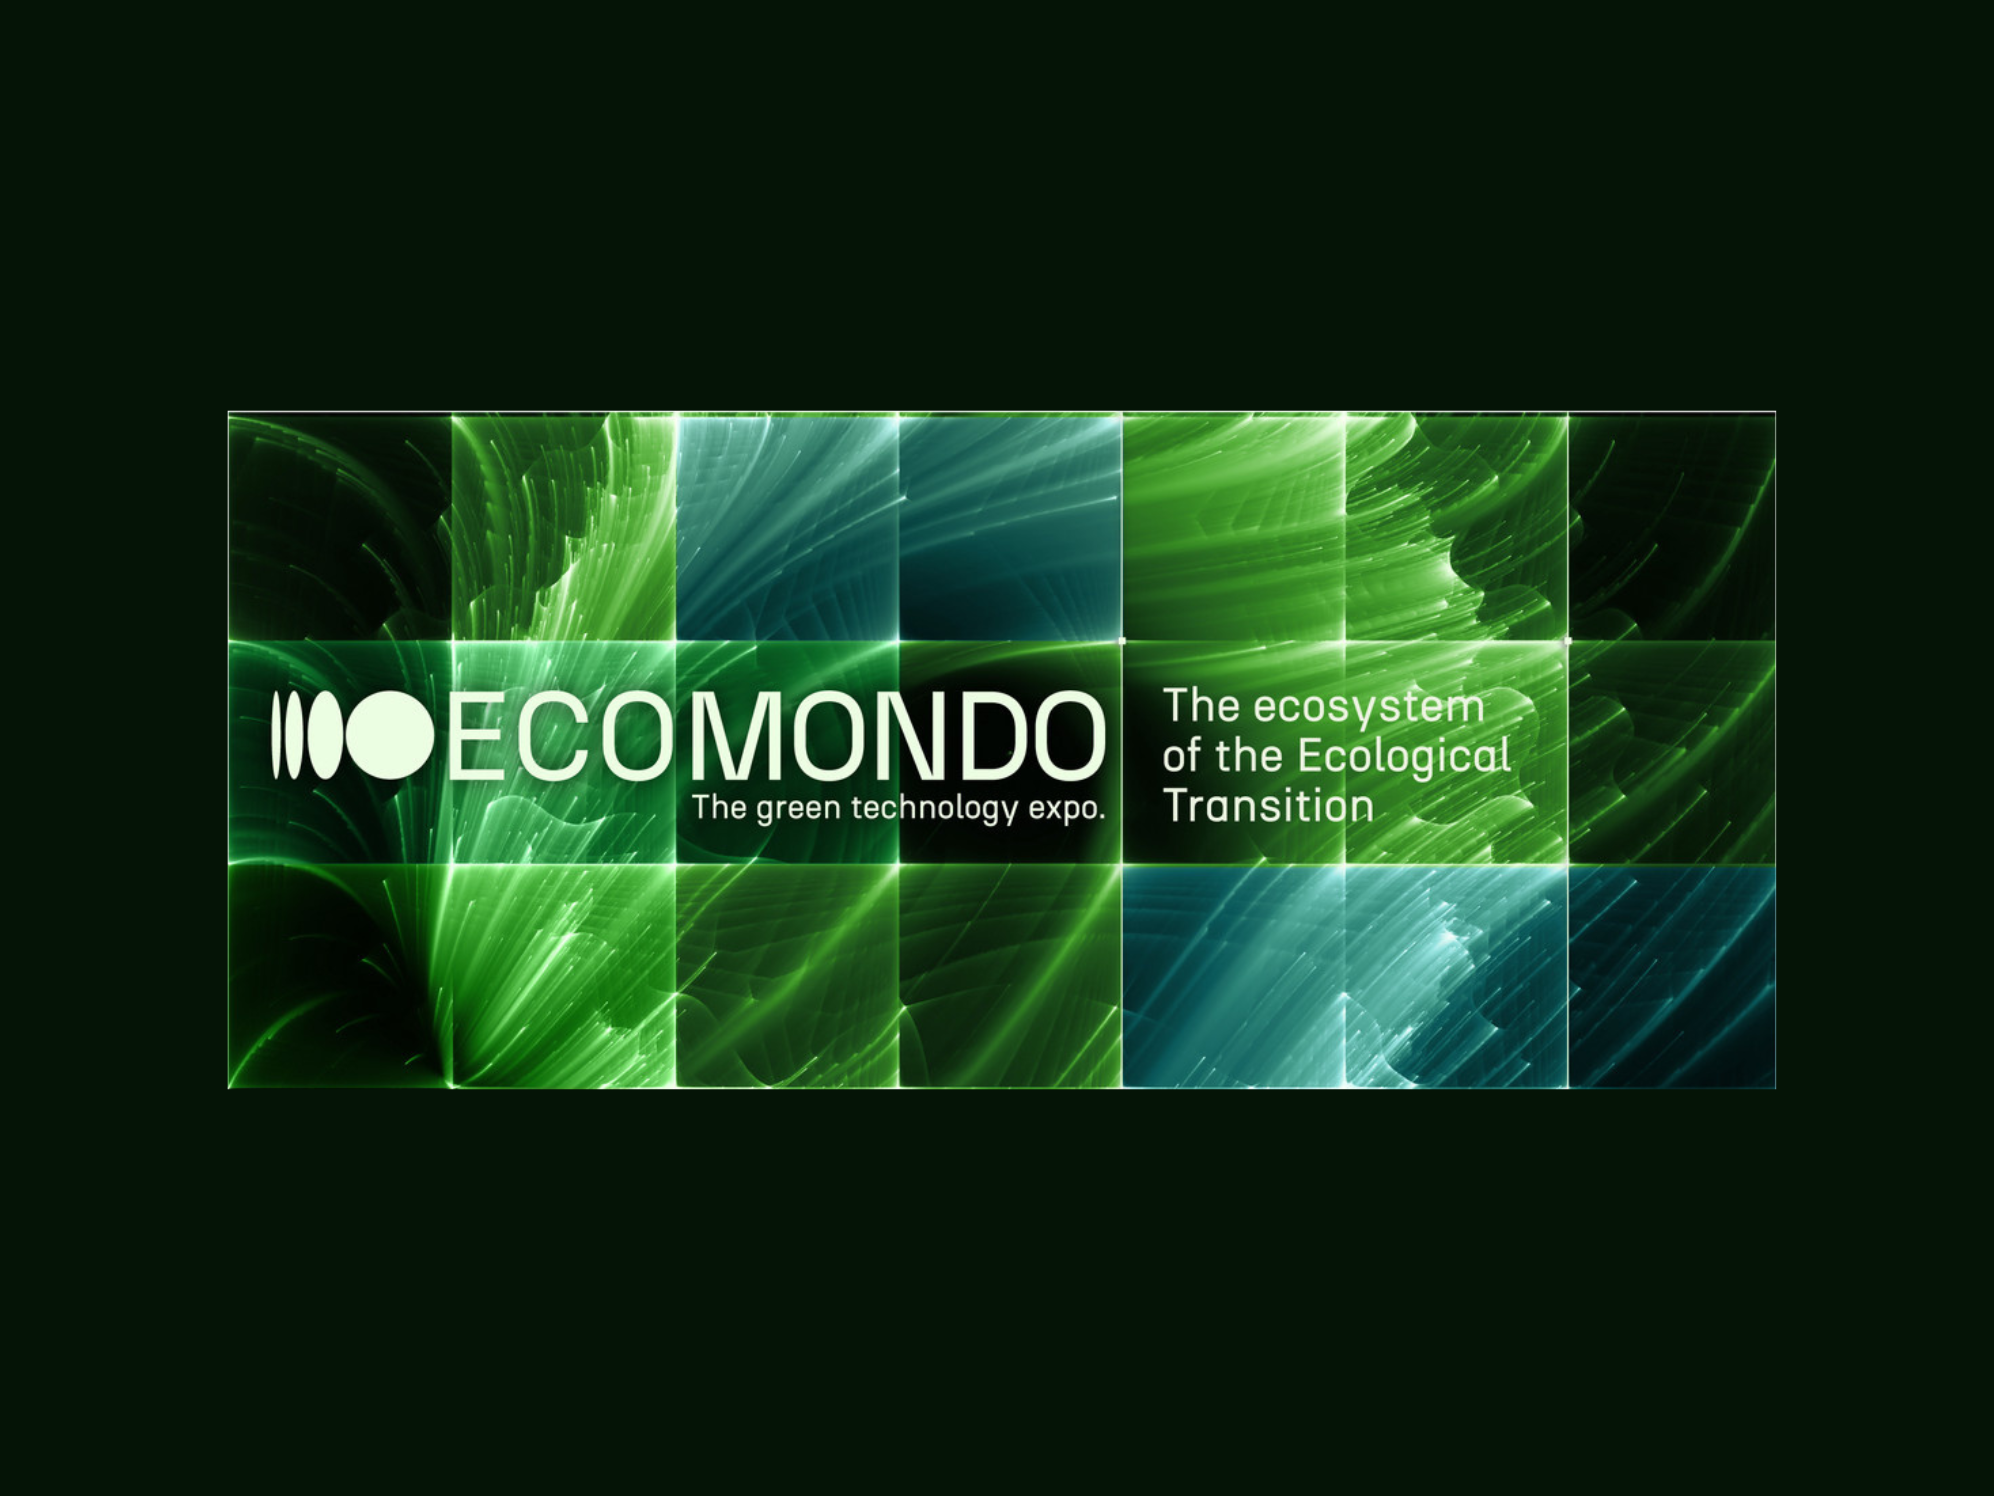 ECOMONDO: The Green Technology Expo